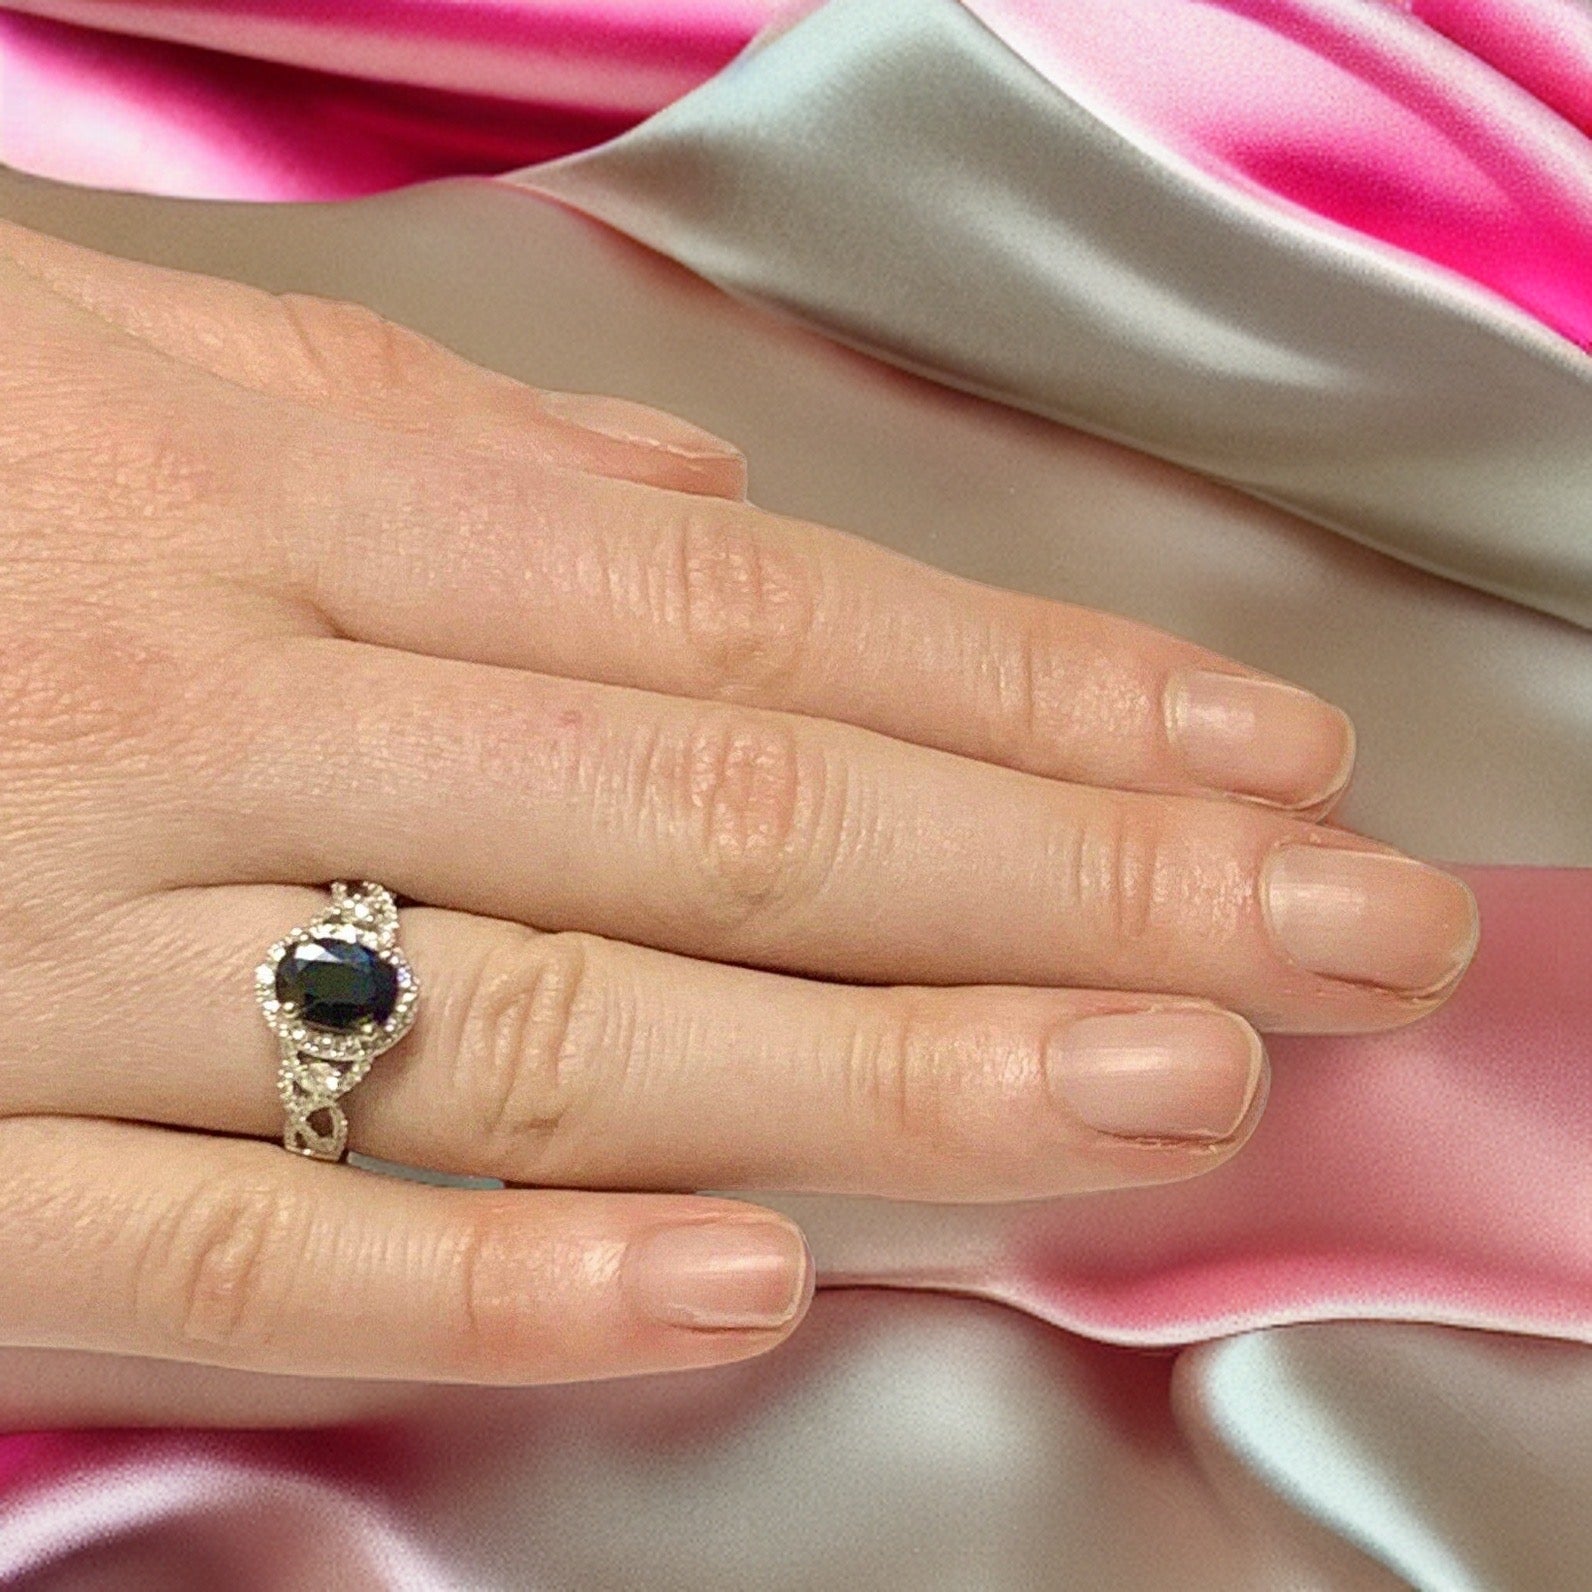 Diamond Sapphire Ring 6.5 18k Gold 2.62 TCW Women Certified $5,000 219794 - Certified Fine Jewelry